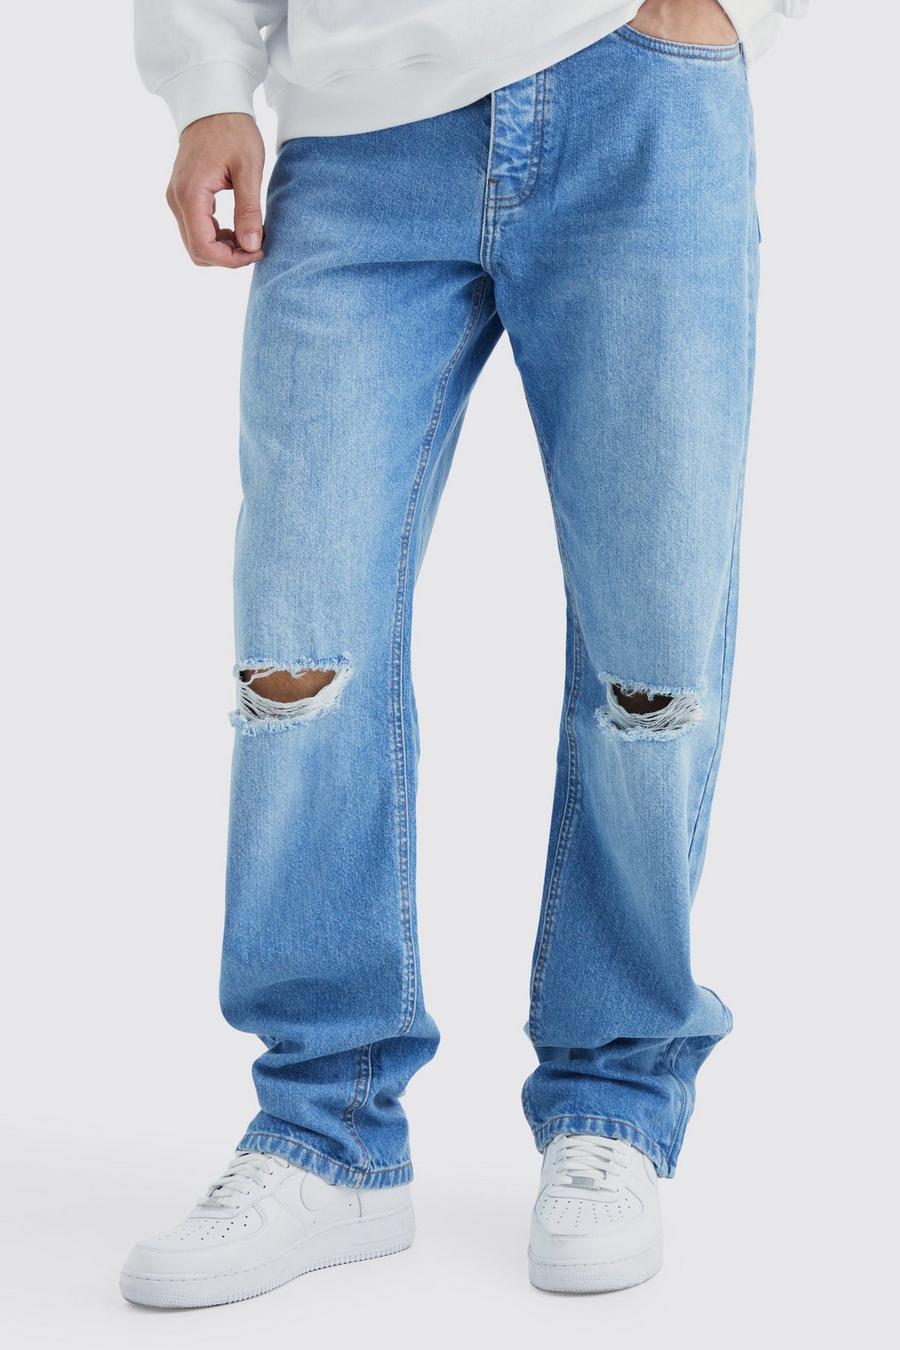 Jeans Tall rilassati in denim rigido con zip sul fondo, Antique blue